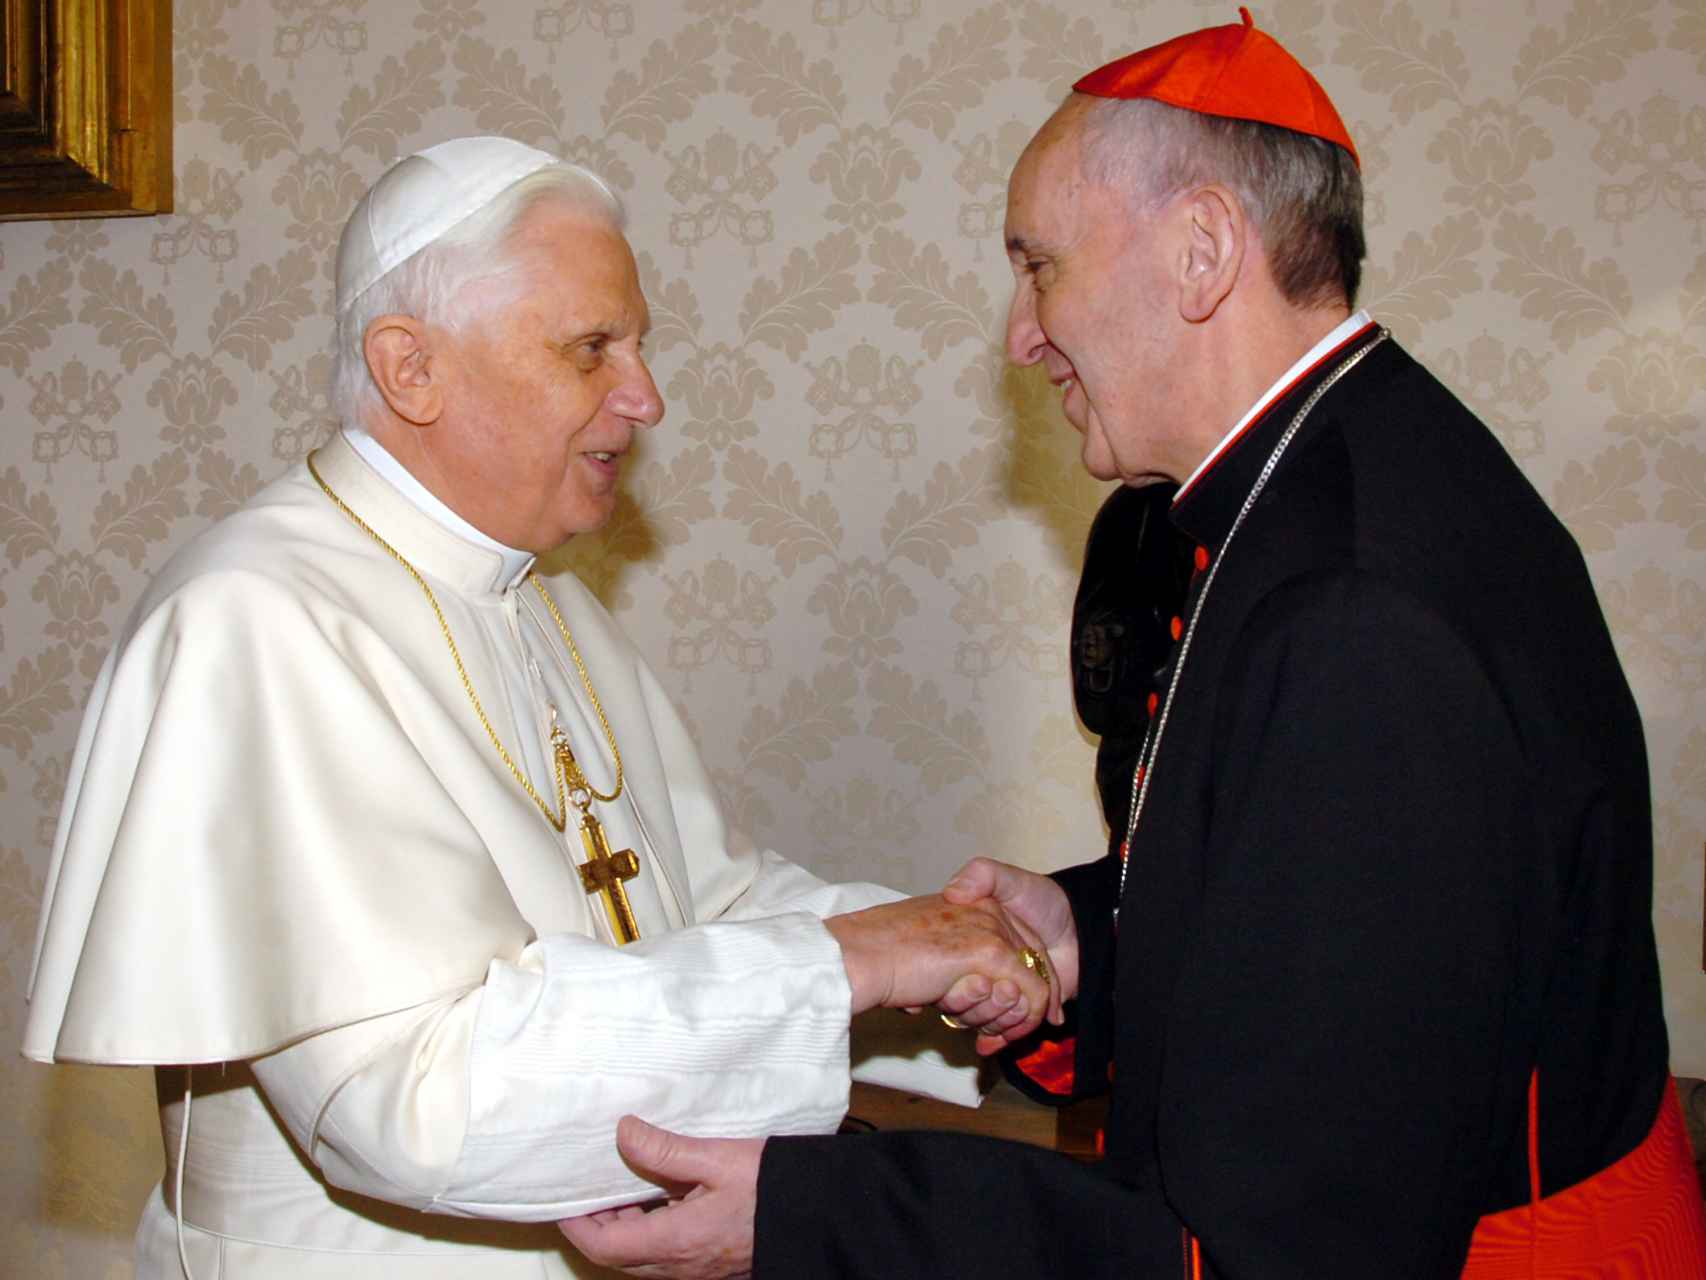 Benedicto XVI saluda al ahora papa cuando era arzobispo y cardenal. La imagen fue tomada en el Vaticano en enero de 2007.